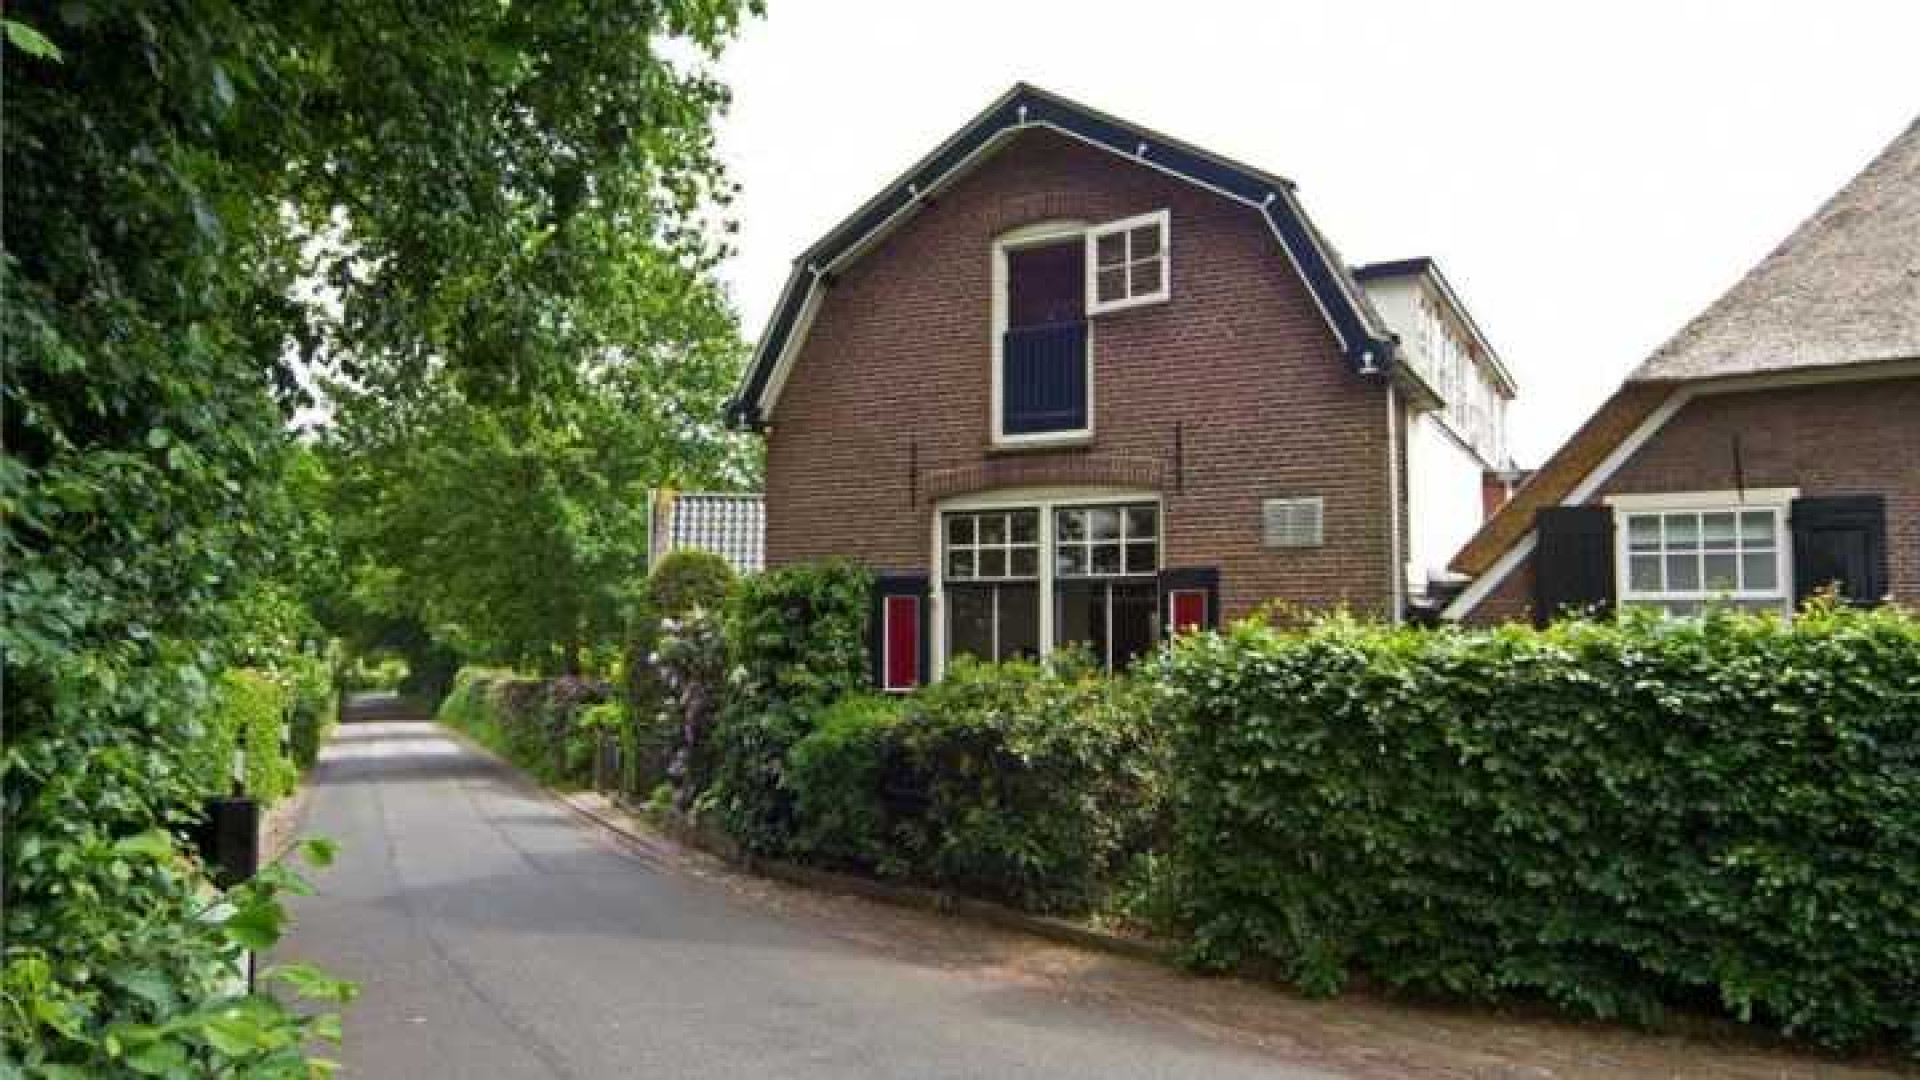 Herman van Veen zet zijn huis te koop. Zie foto's